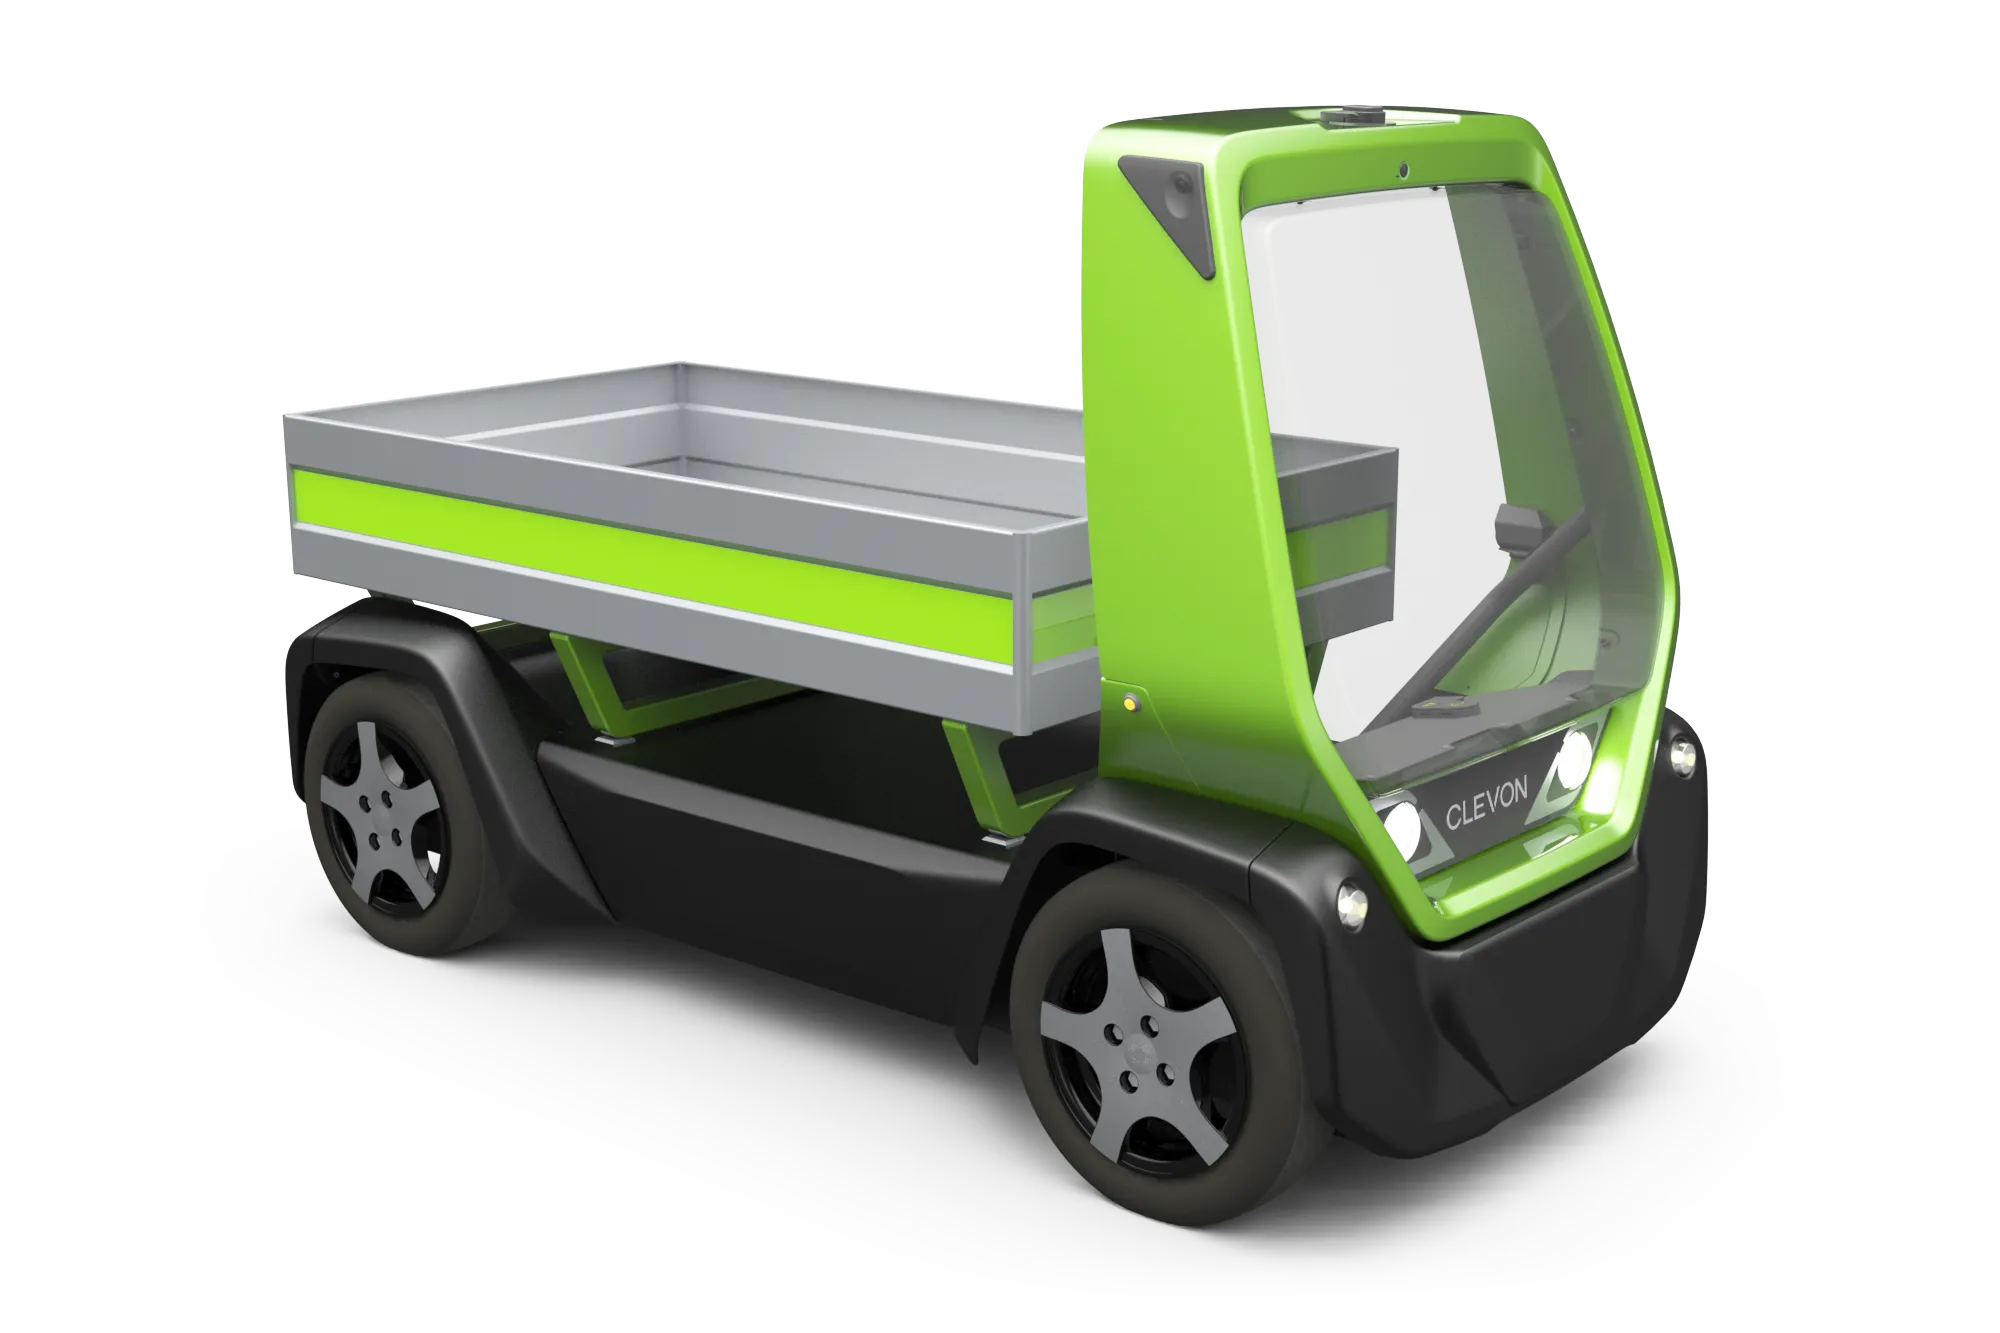 CLEVON 1 autonomous platform vehicle with flat bed